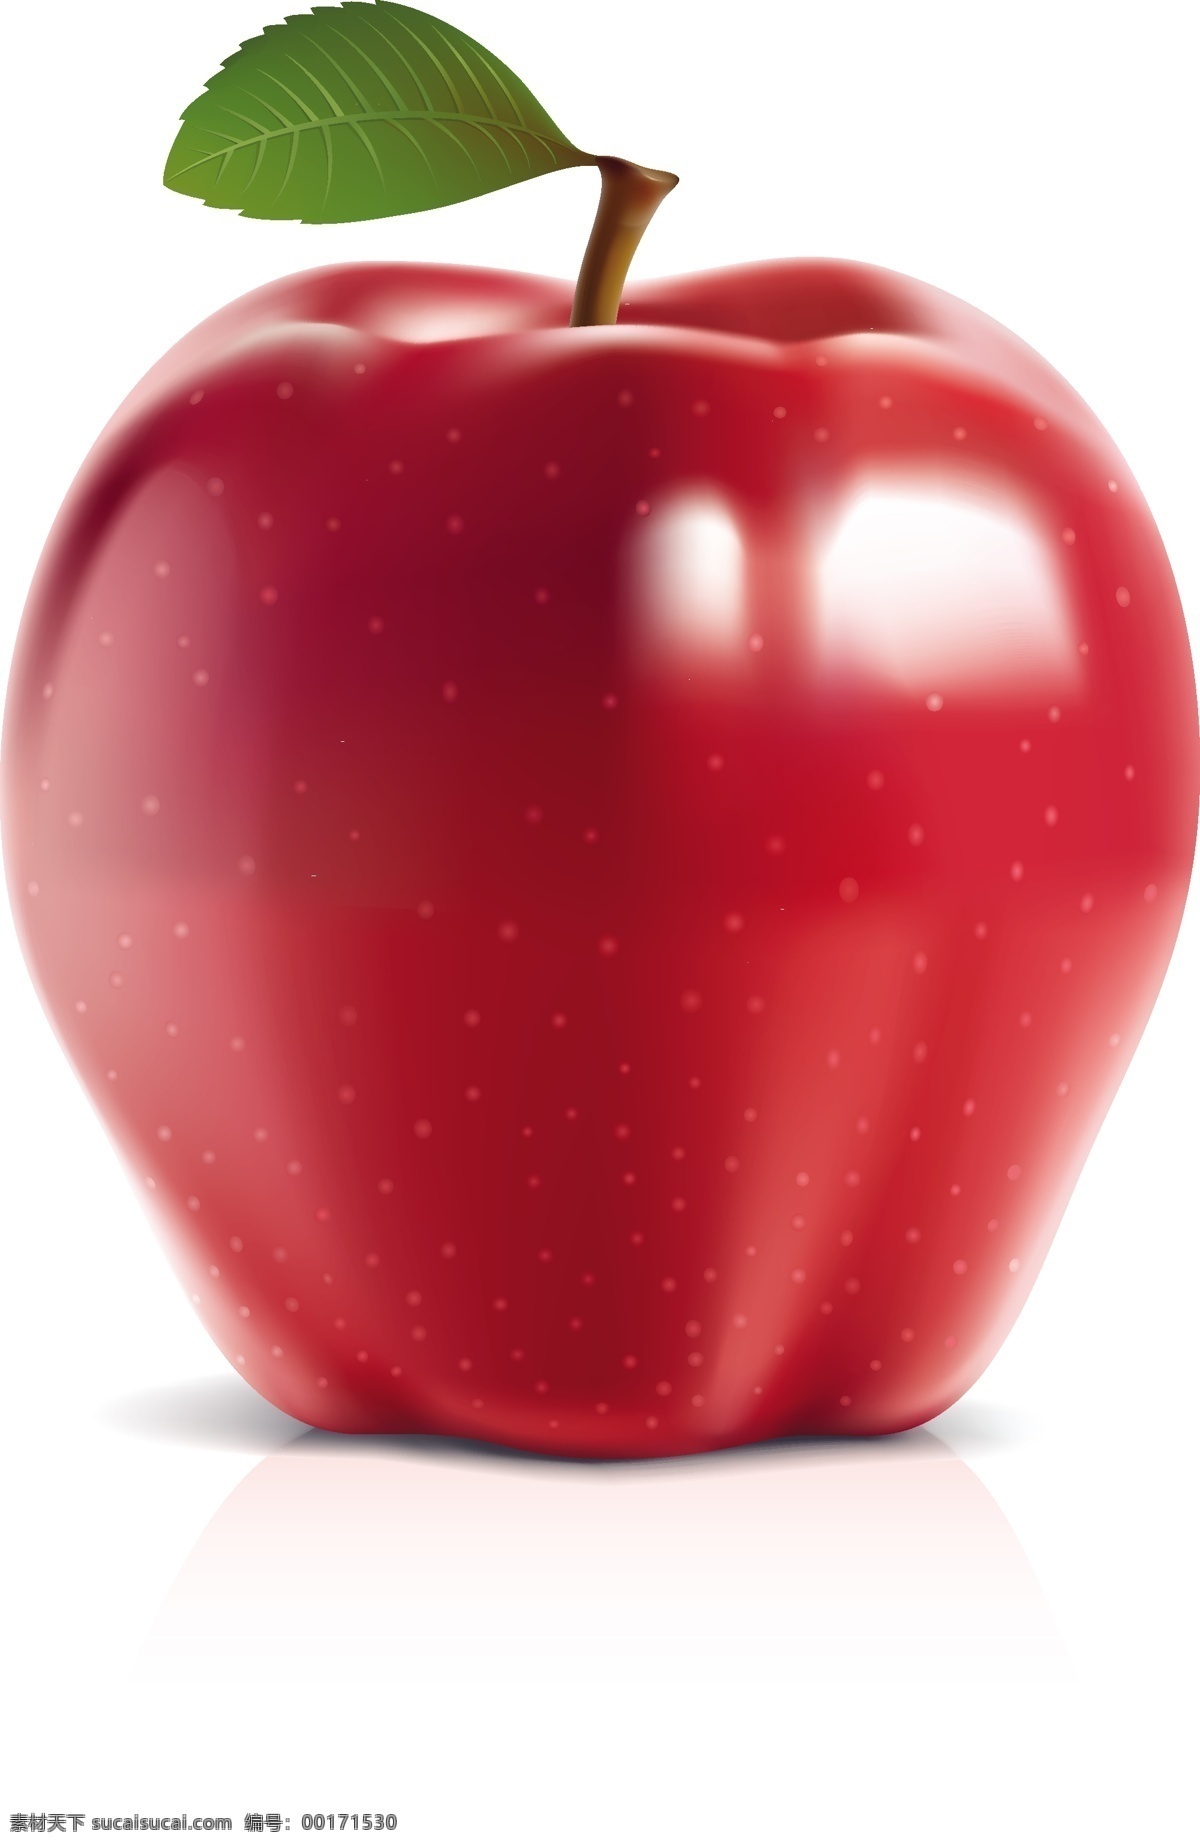 红富士苹果 矢量苹果 苹果 红色苹果 成熟苹果 立体苹果 零售素材